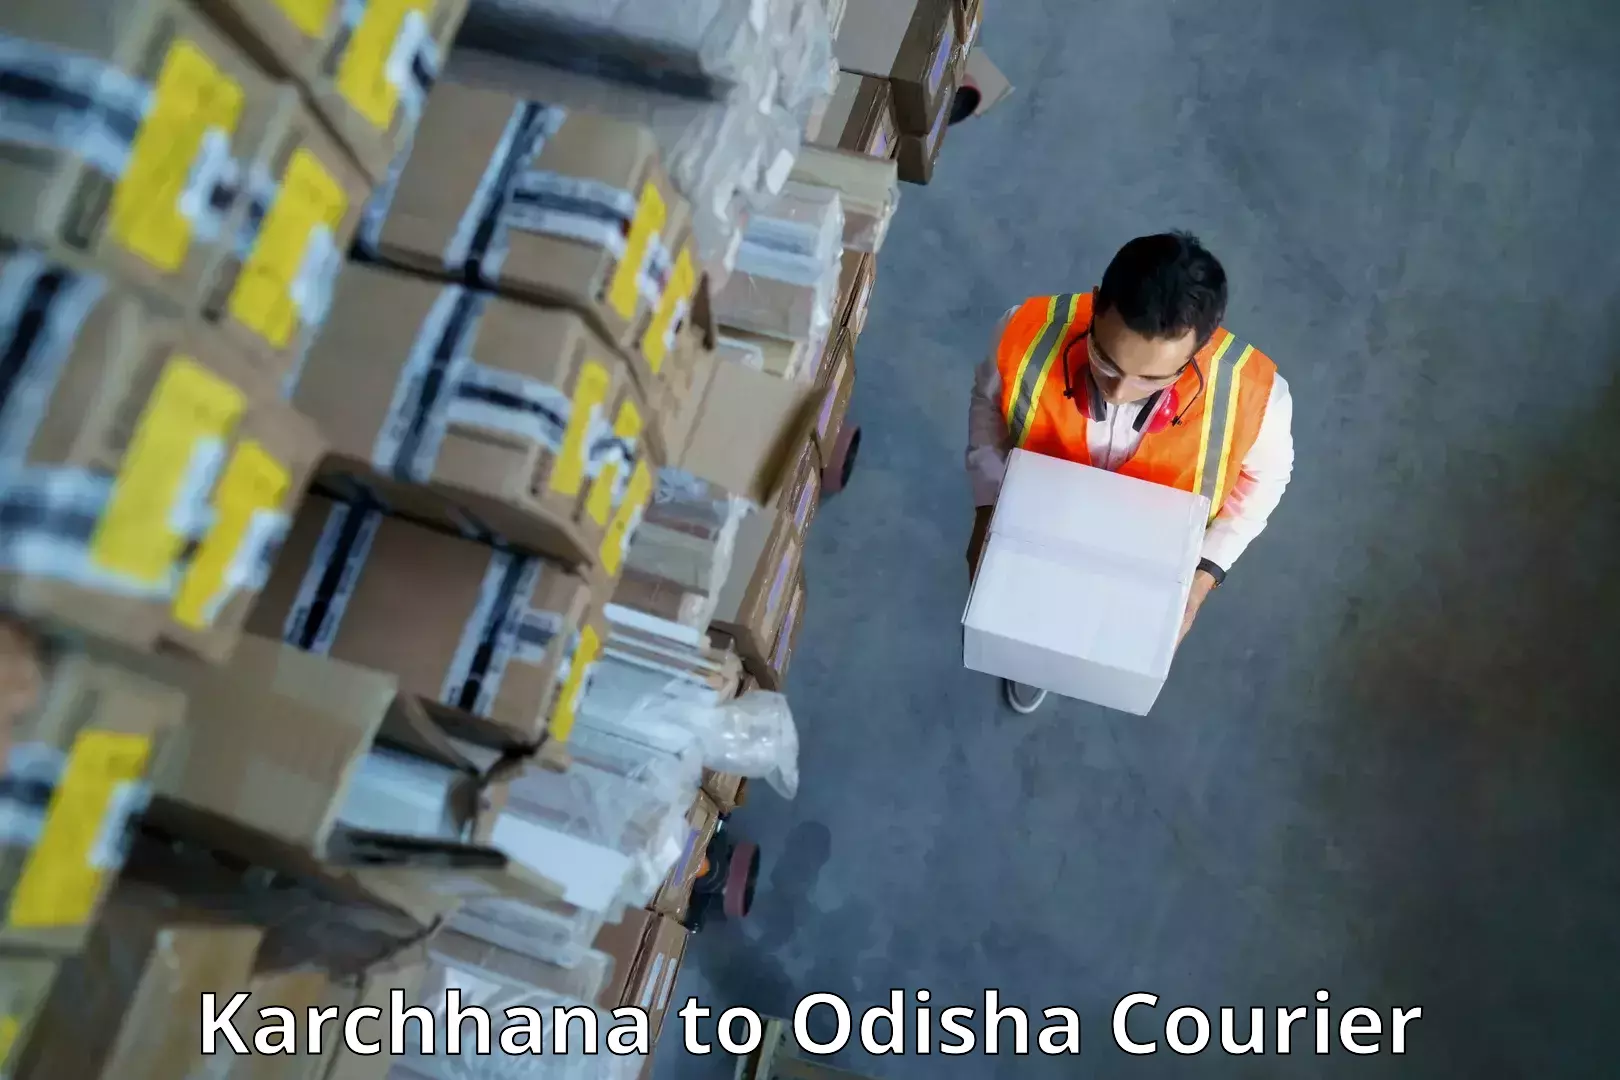 Courier app Karchhana to Odisha